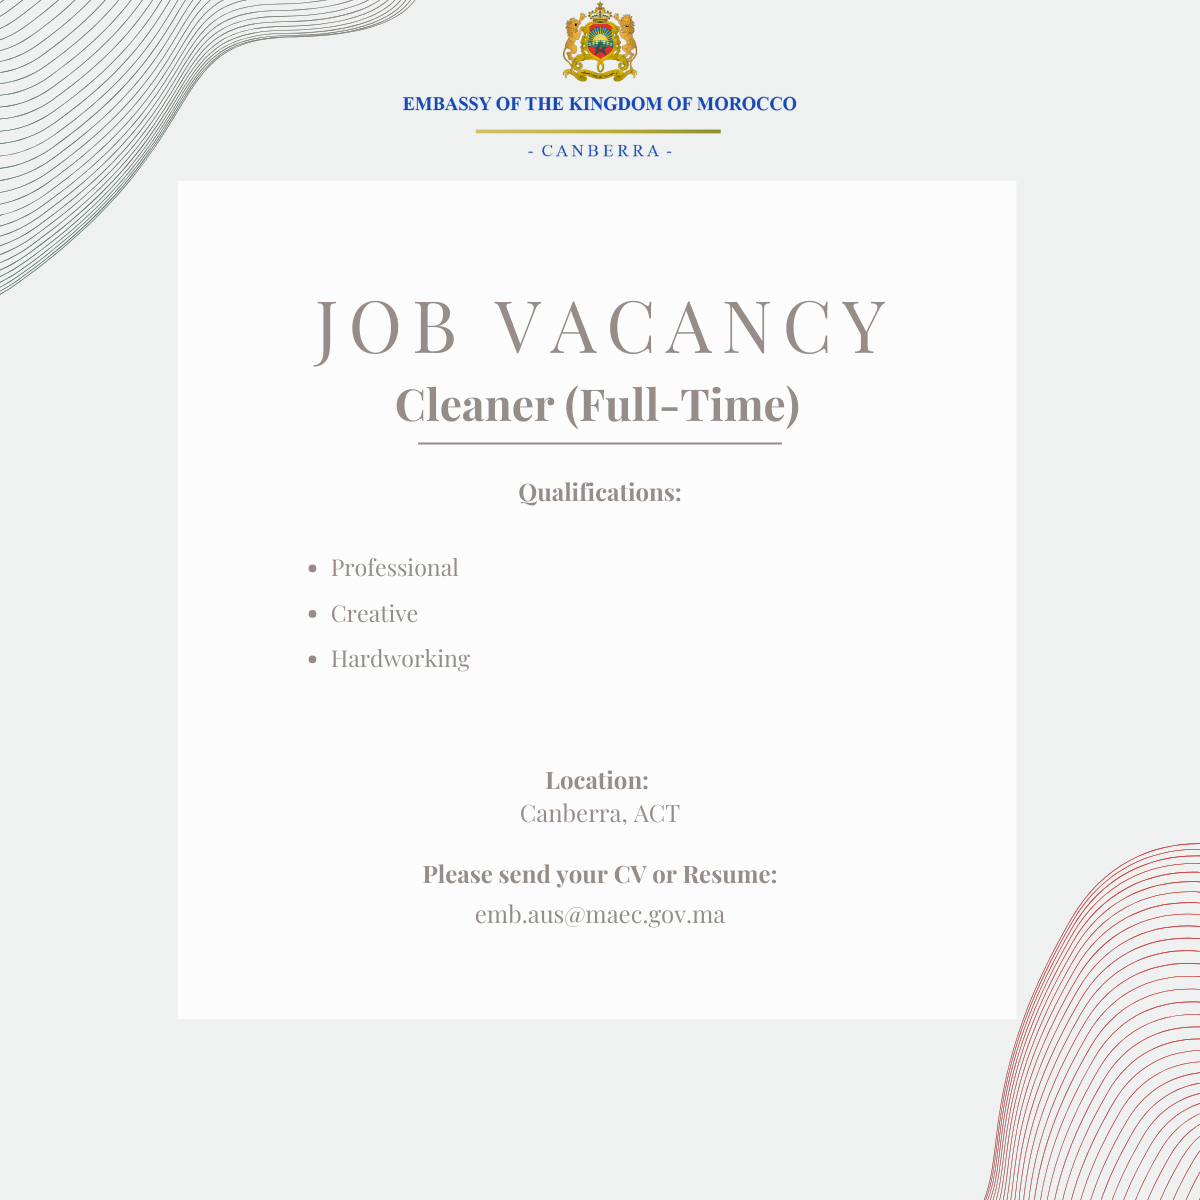 Job Vacancy - Cleaner